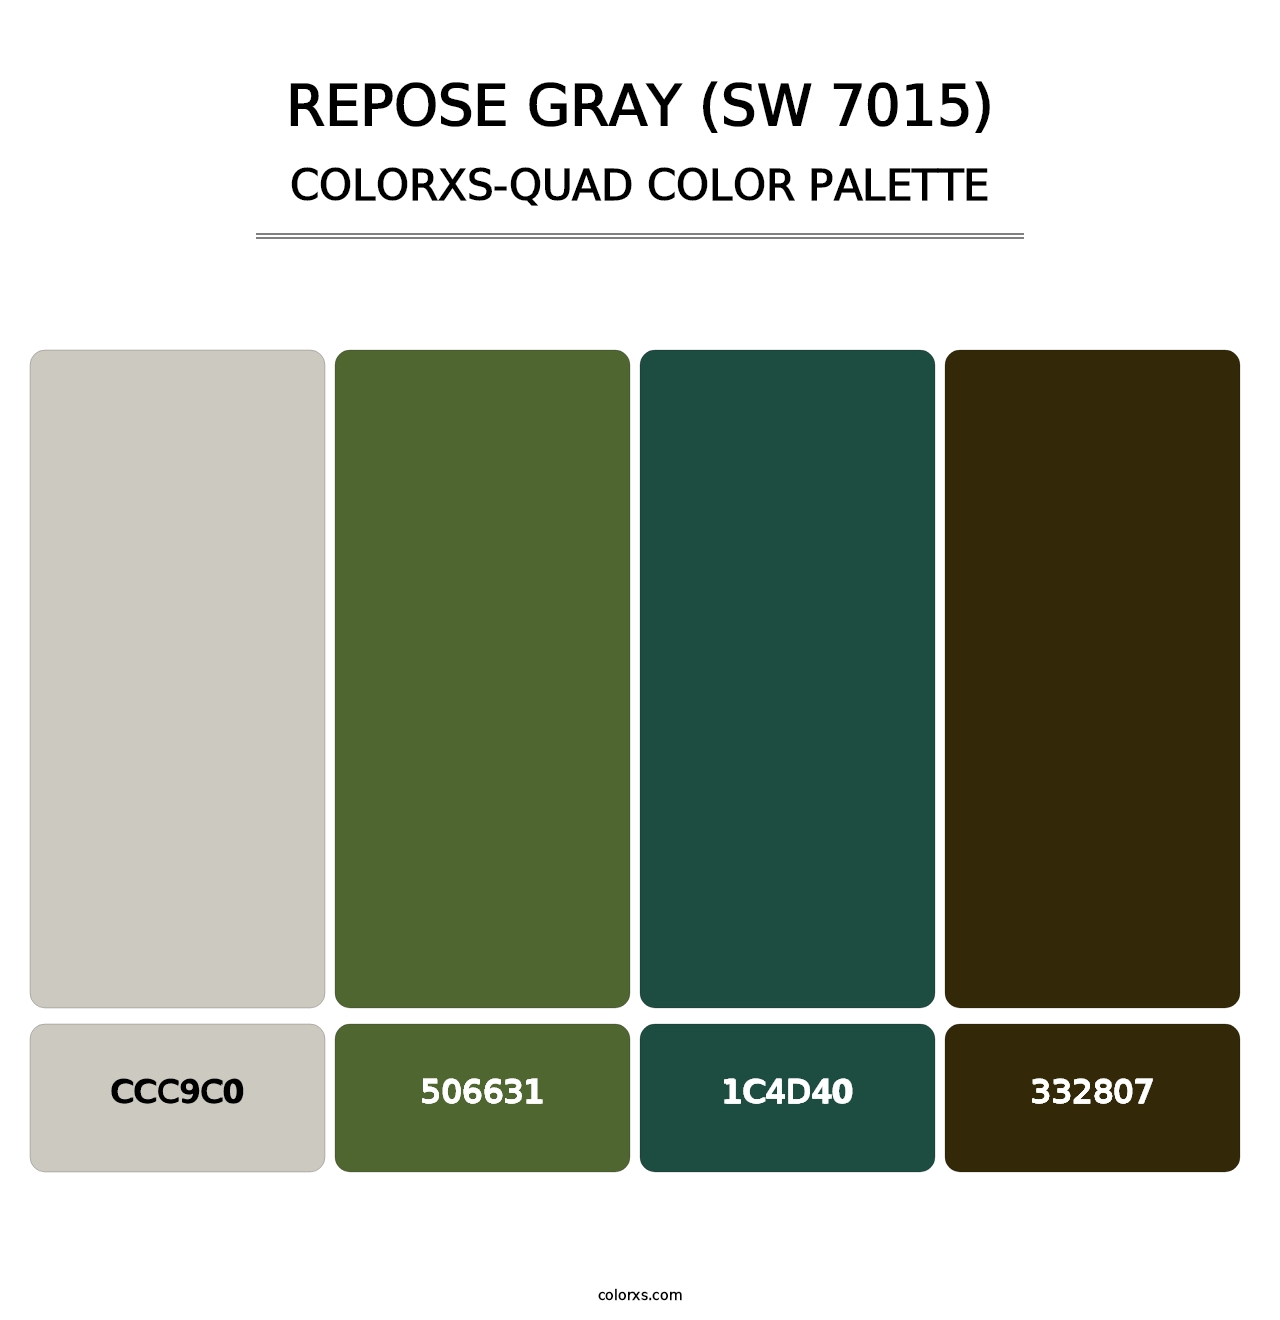 Repose Gray (SW 7015) - Colorxs Quad Palette